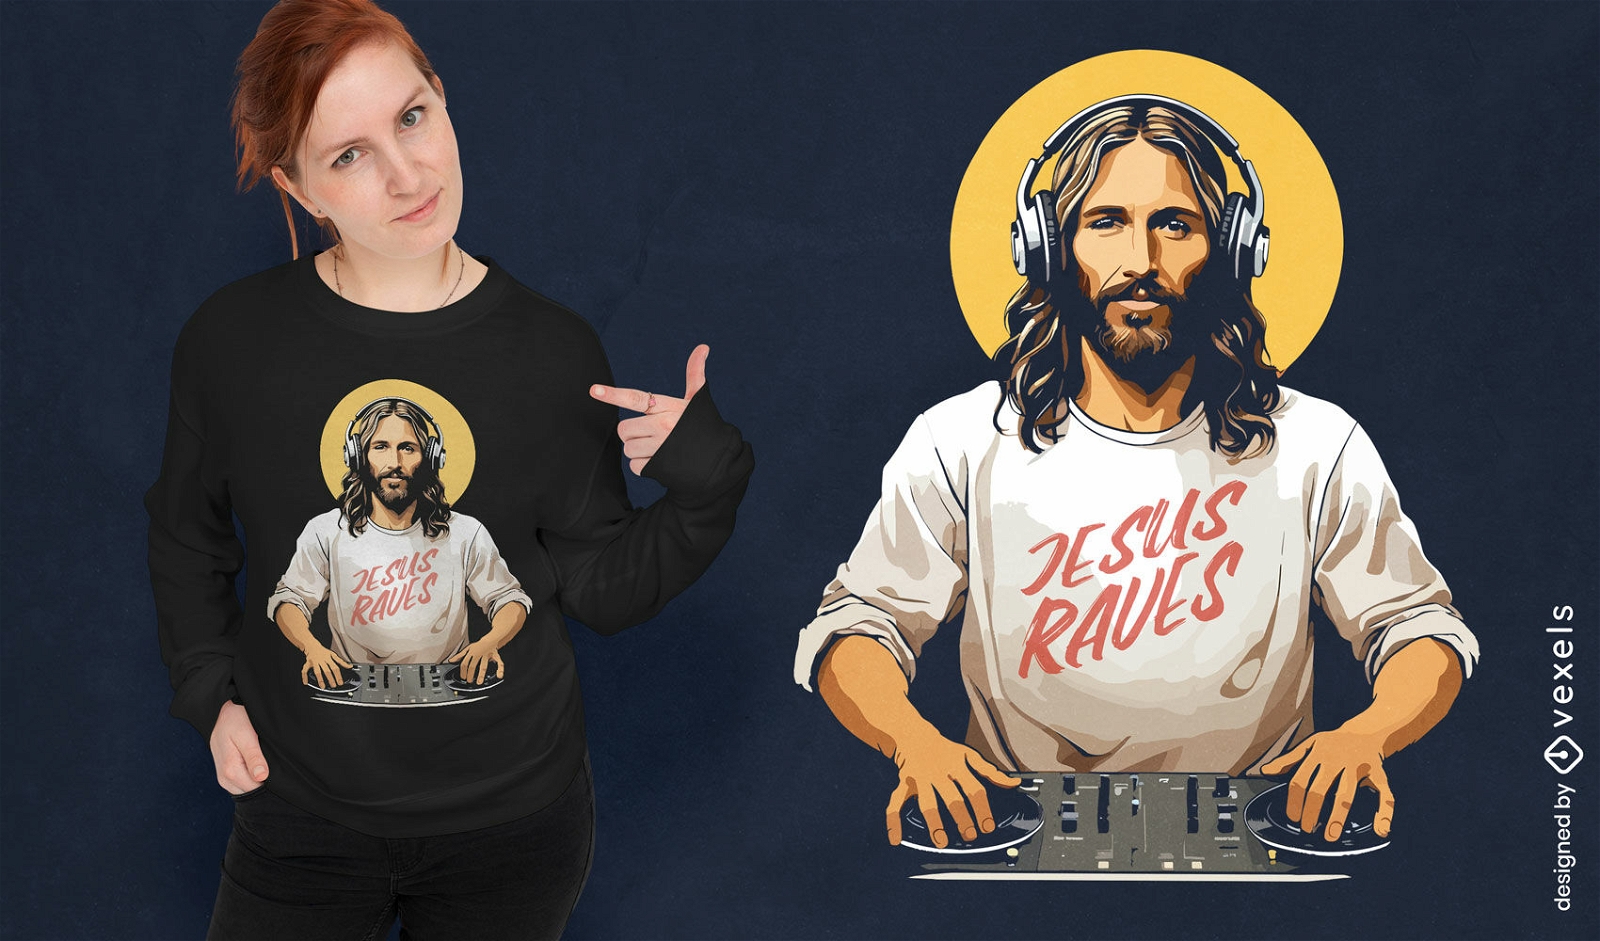 DJ Jesus schw?rmt vom T-Shirt-Design